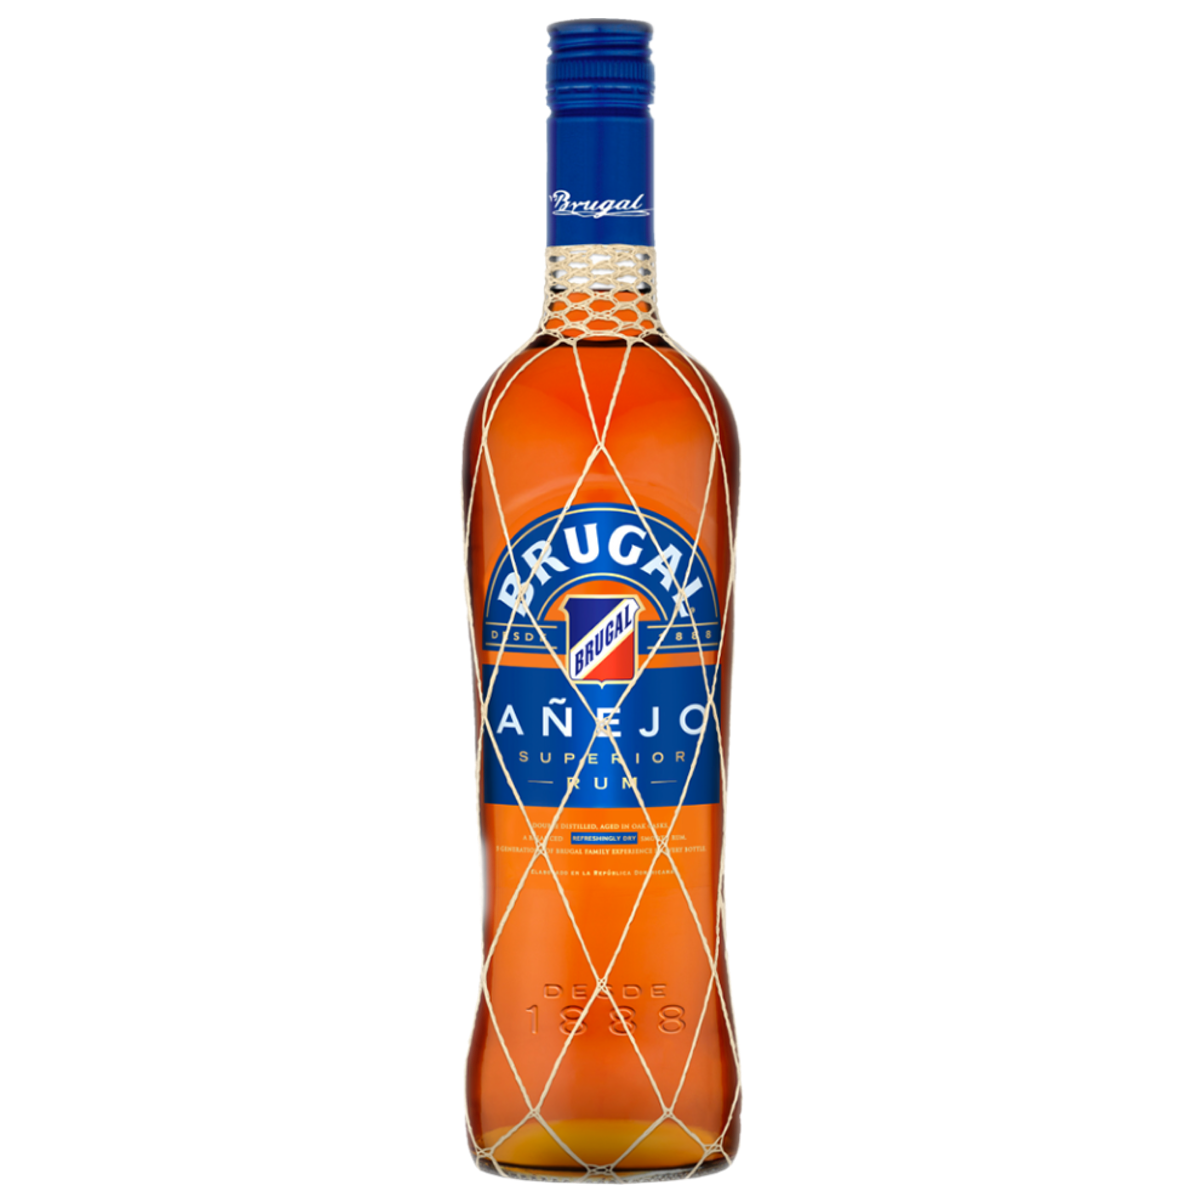 Brugal Rum Anejo Superior